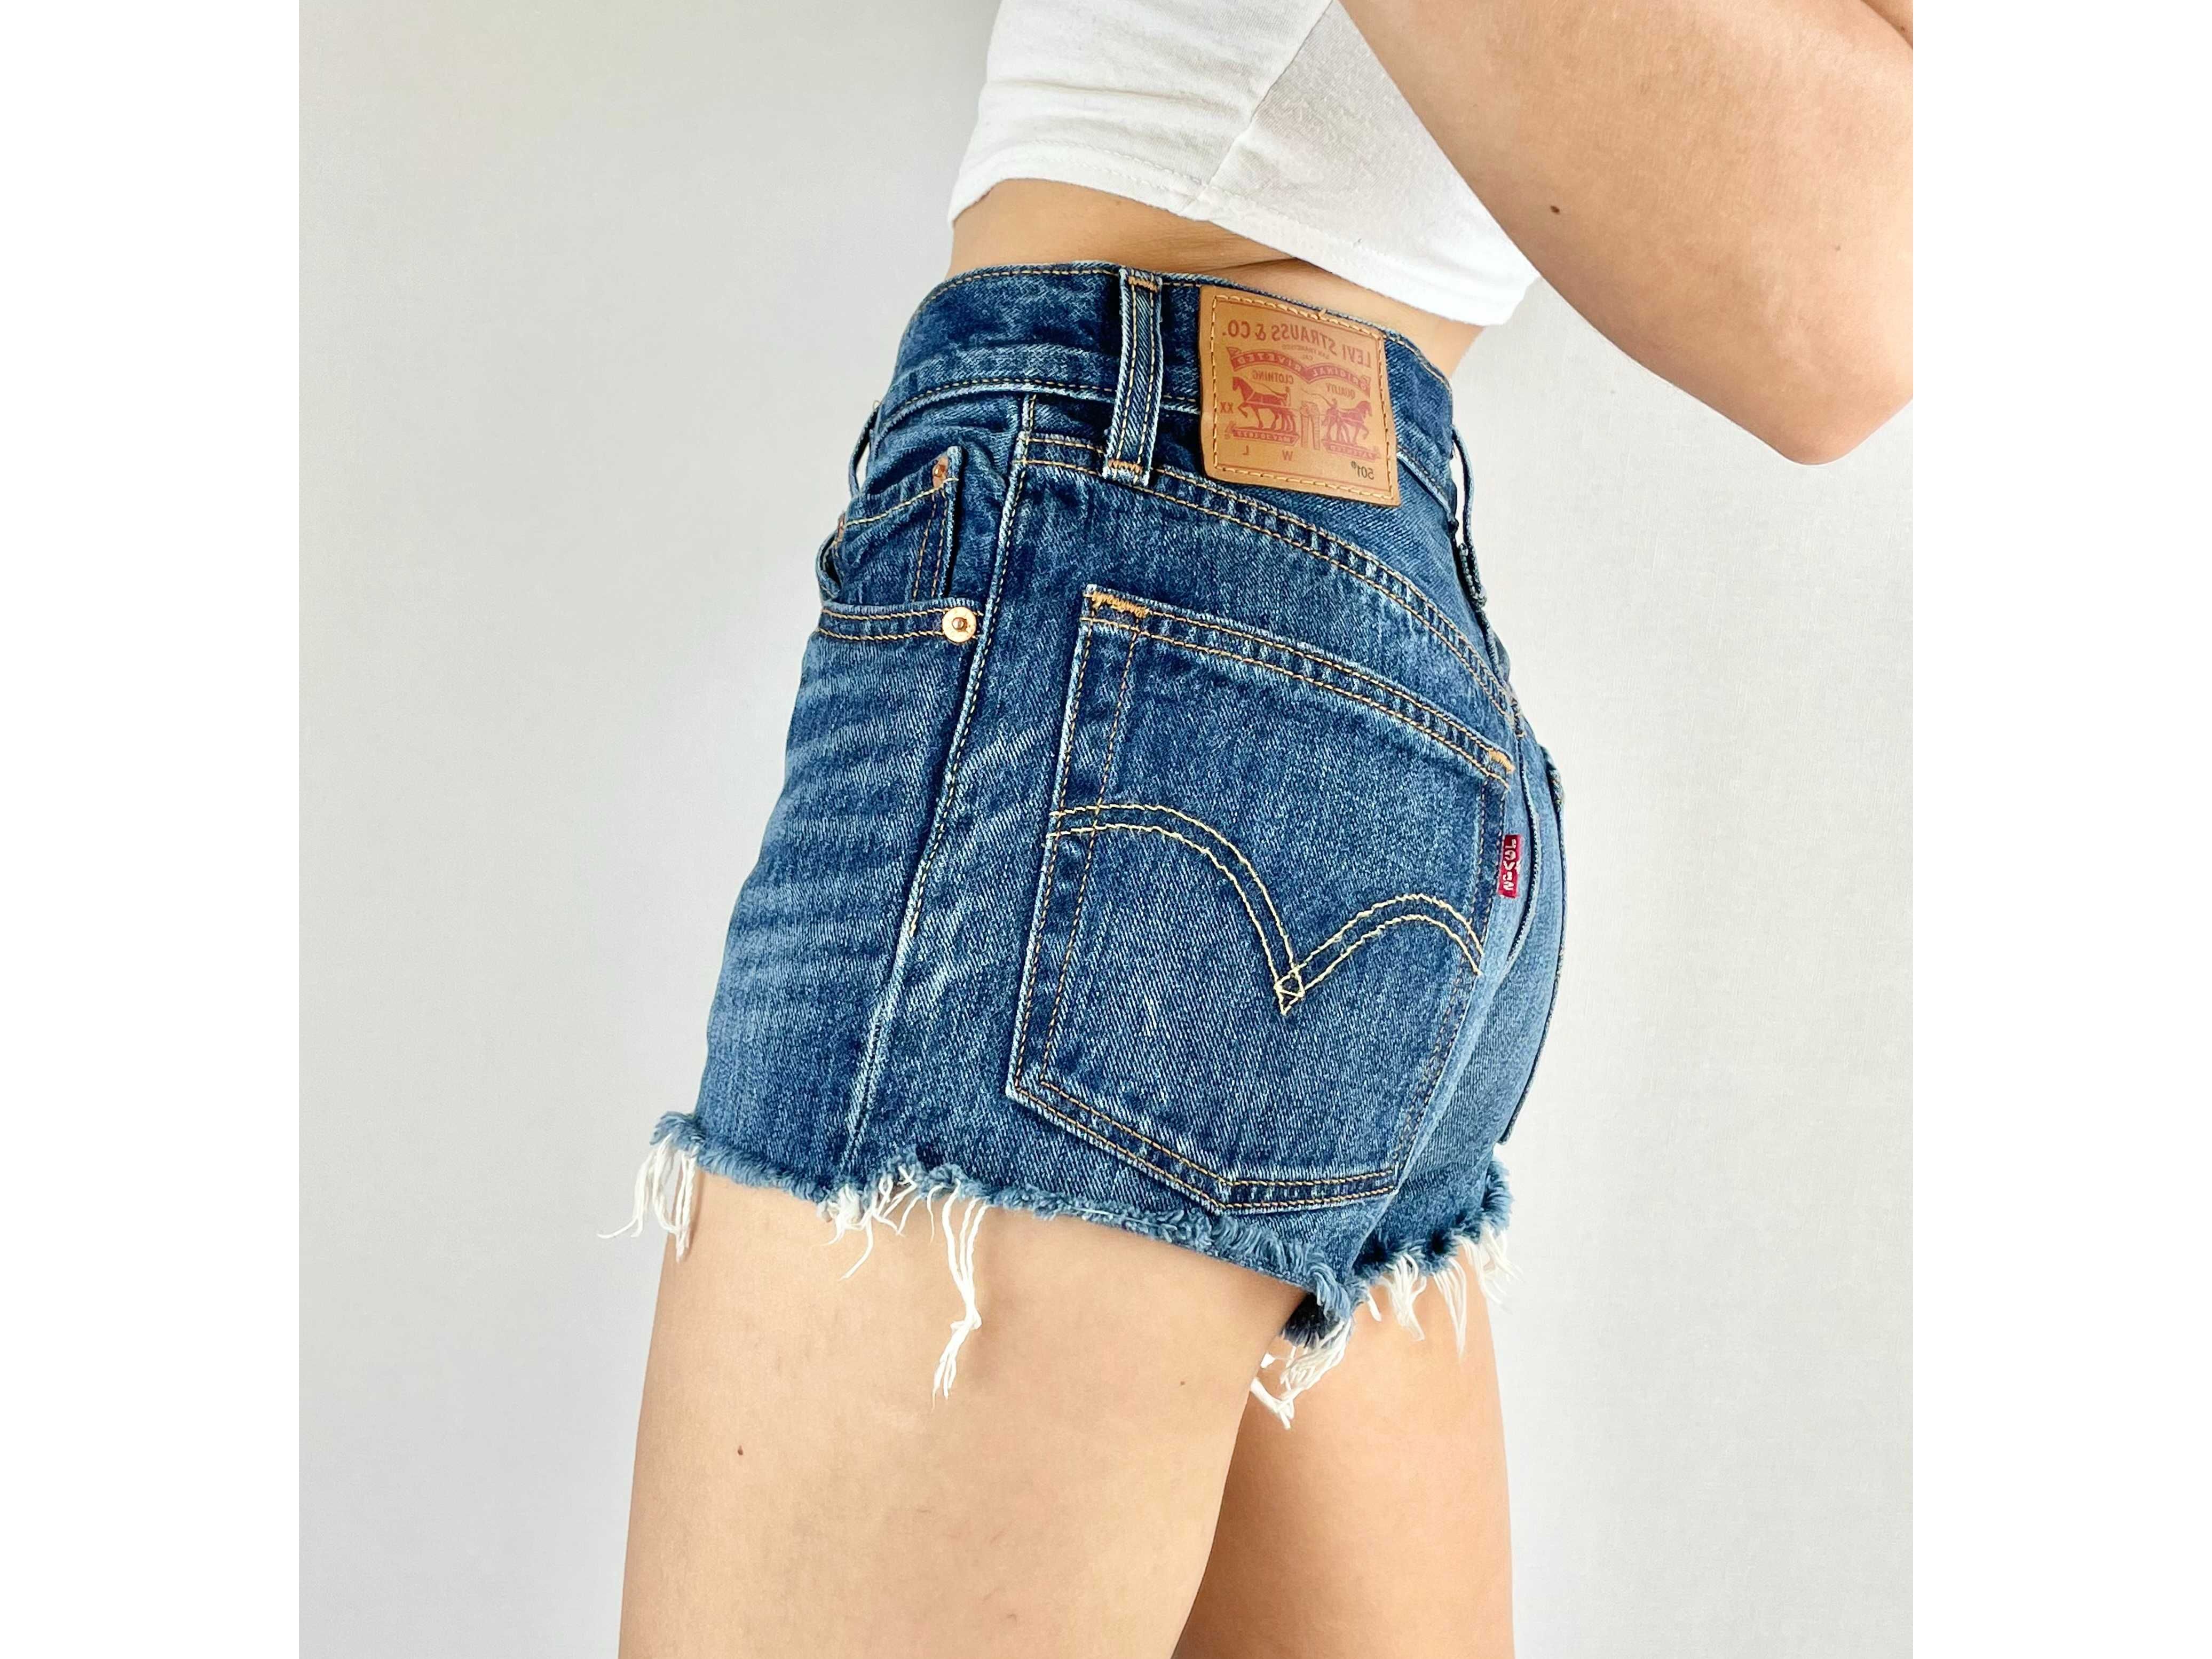 ХС Шорти Levi’s premium шорты джинсовые джинсові оригинал